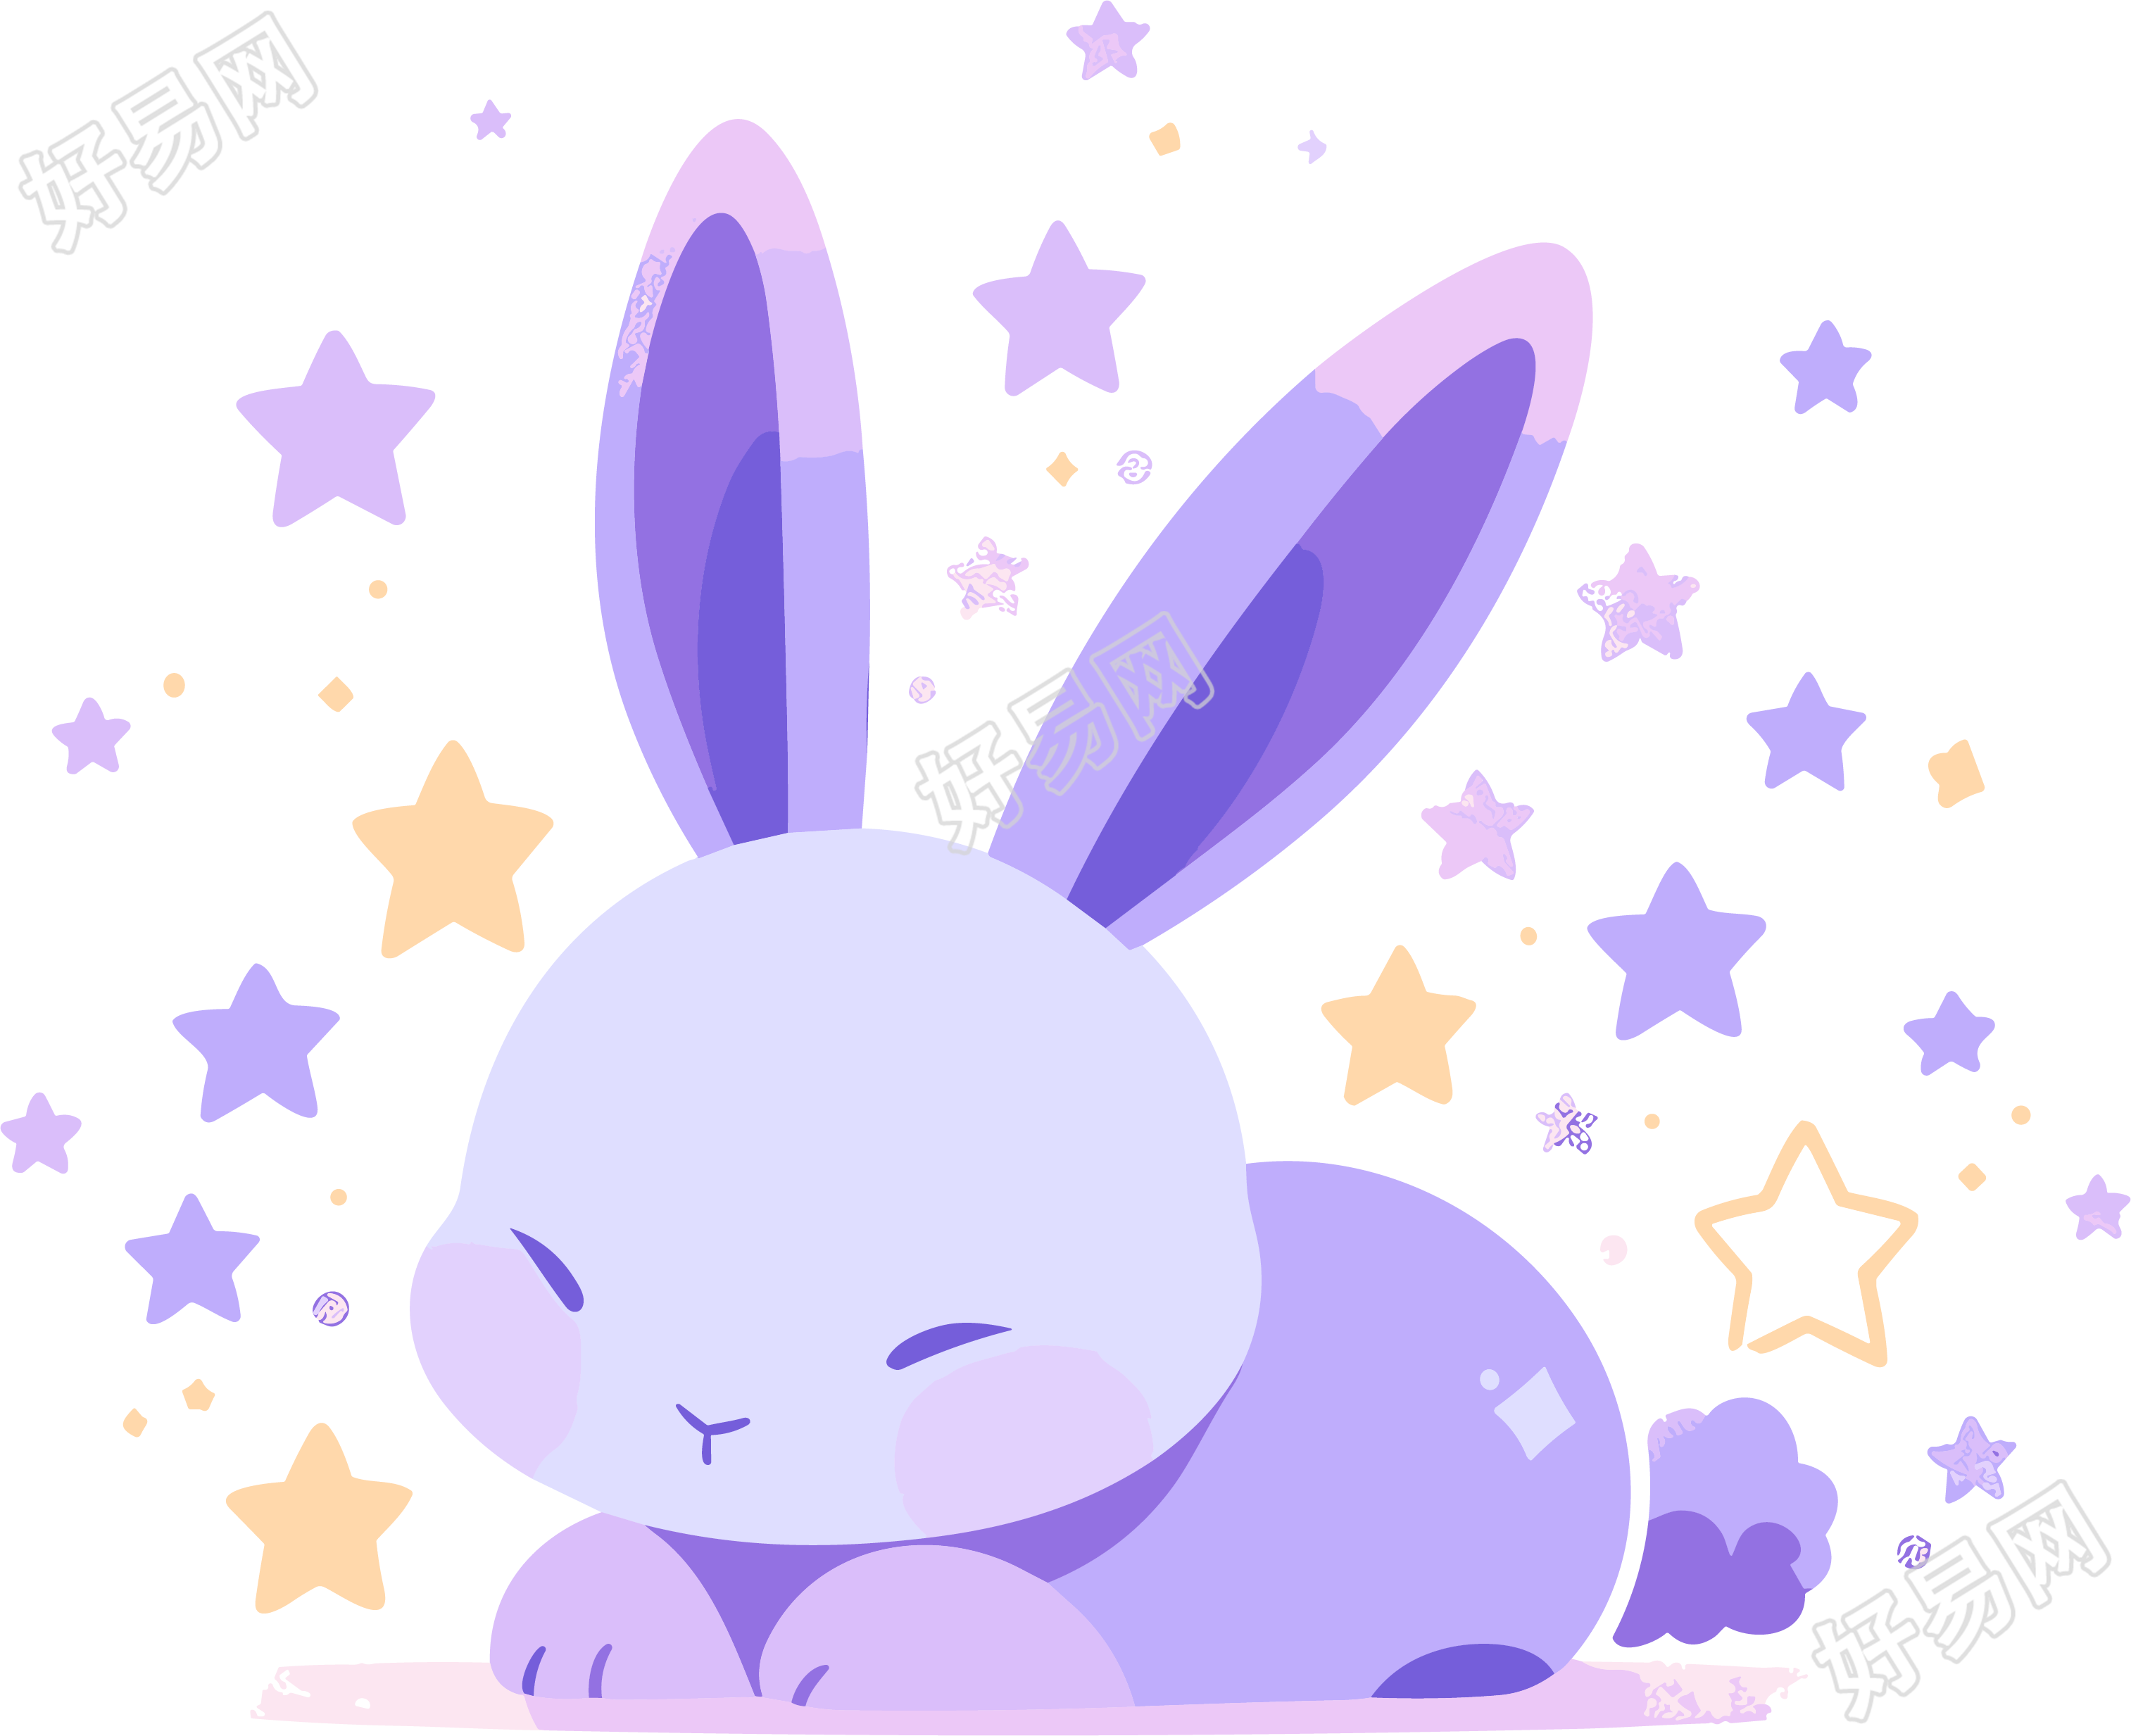 星星陪伴的紫色兔子卡通素材